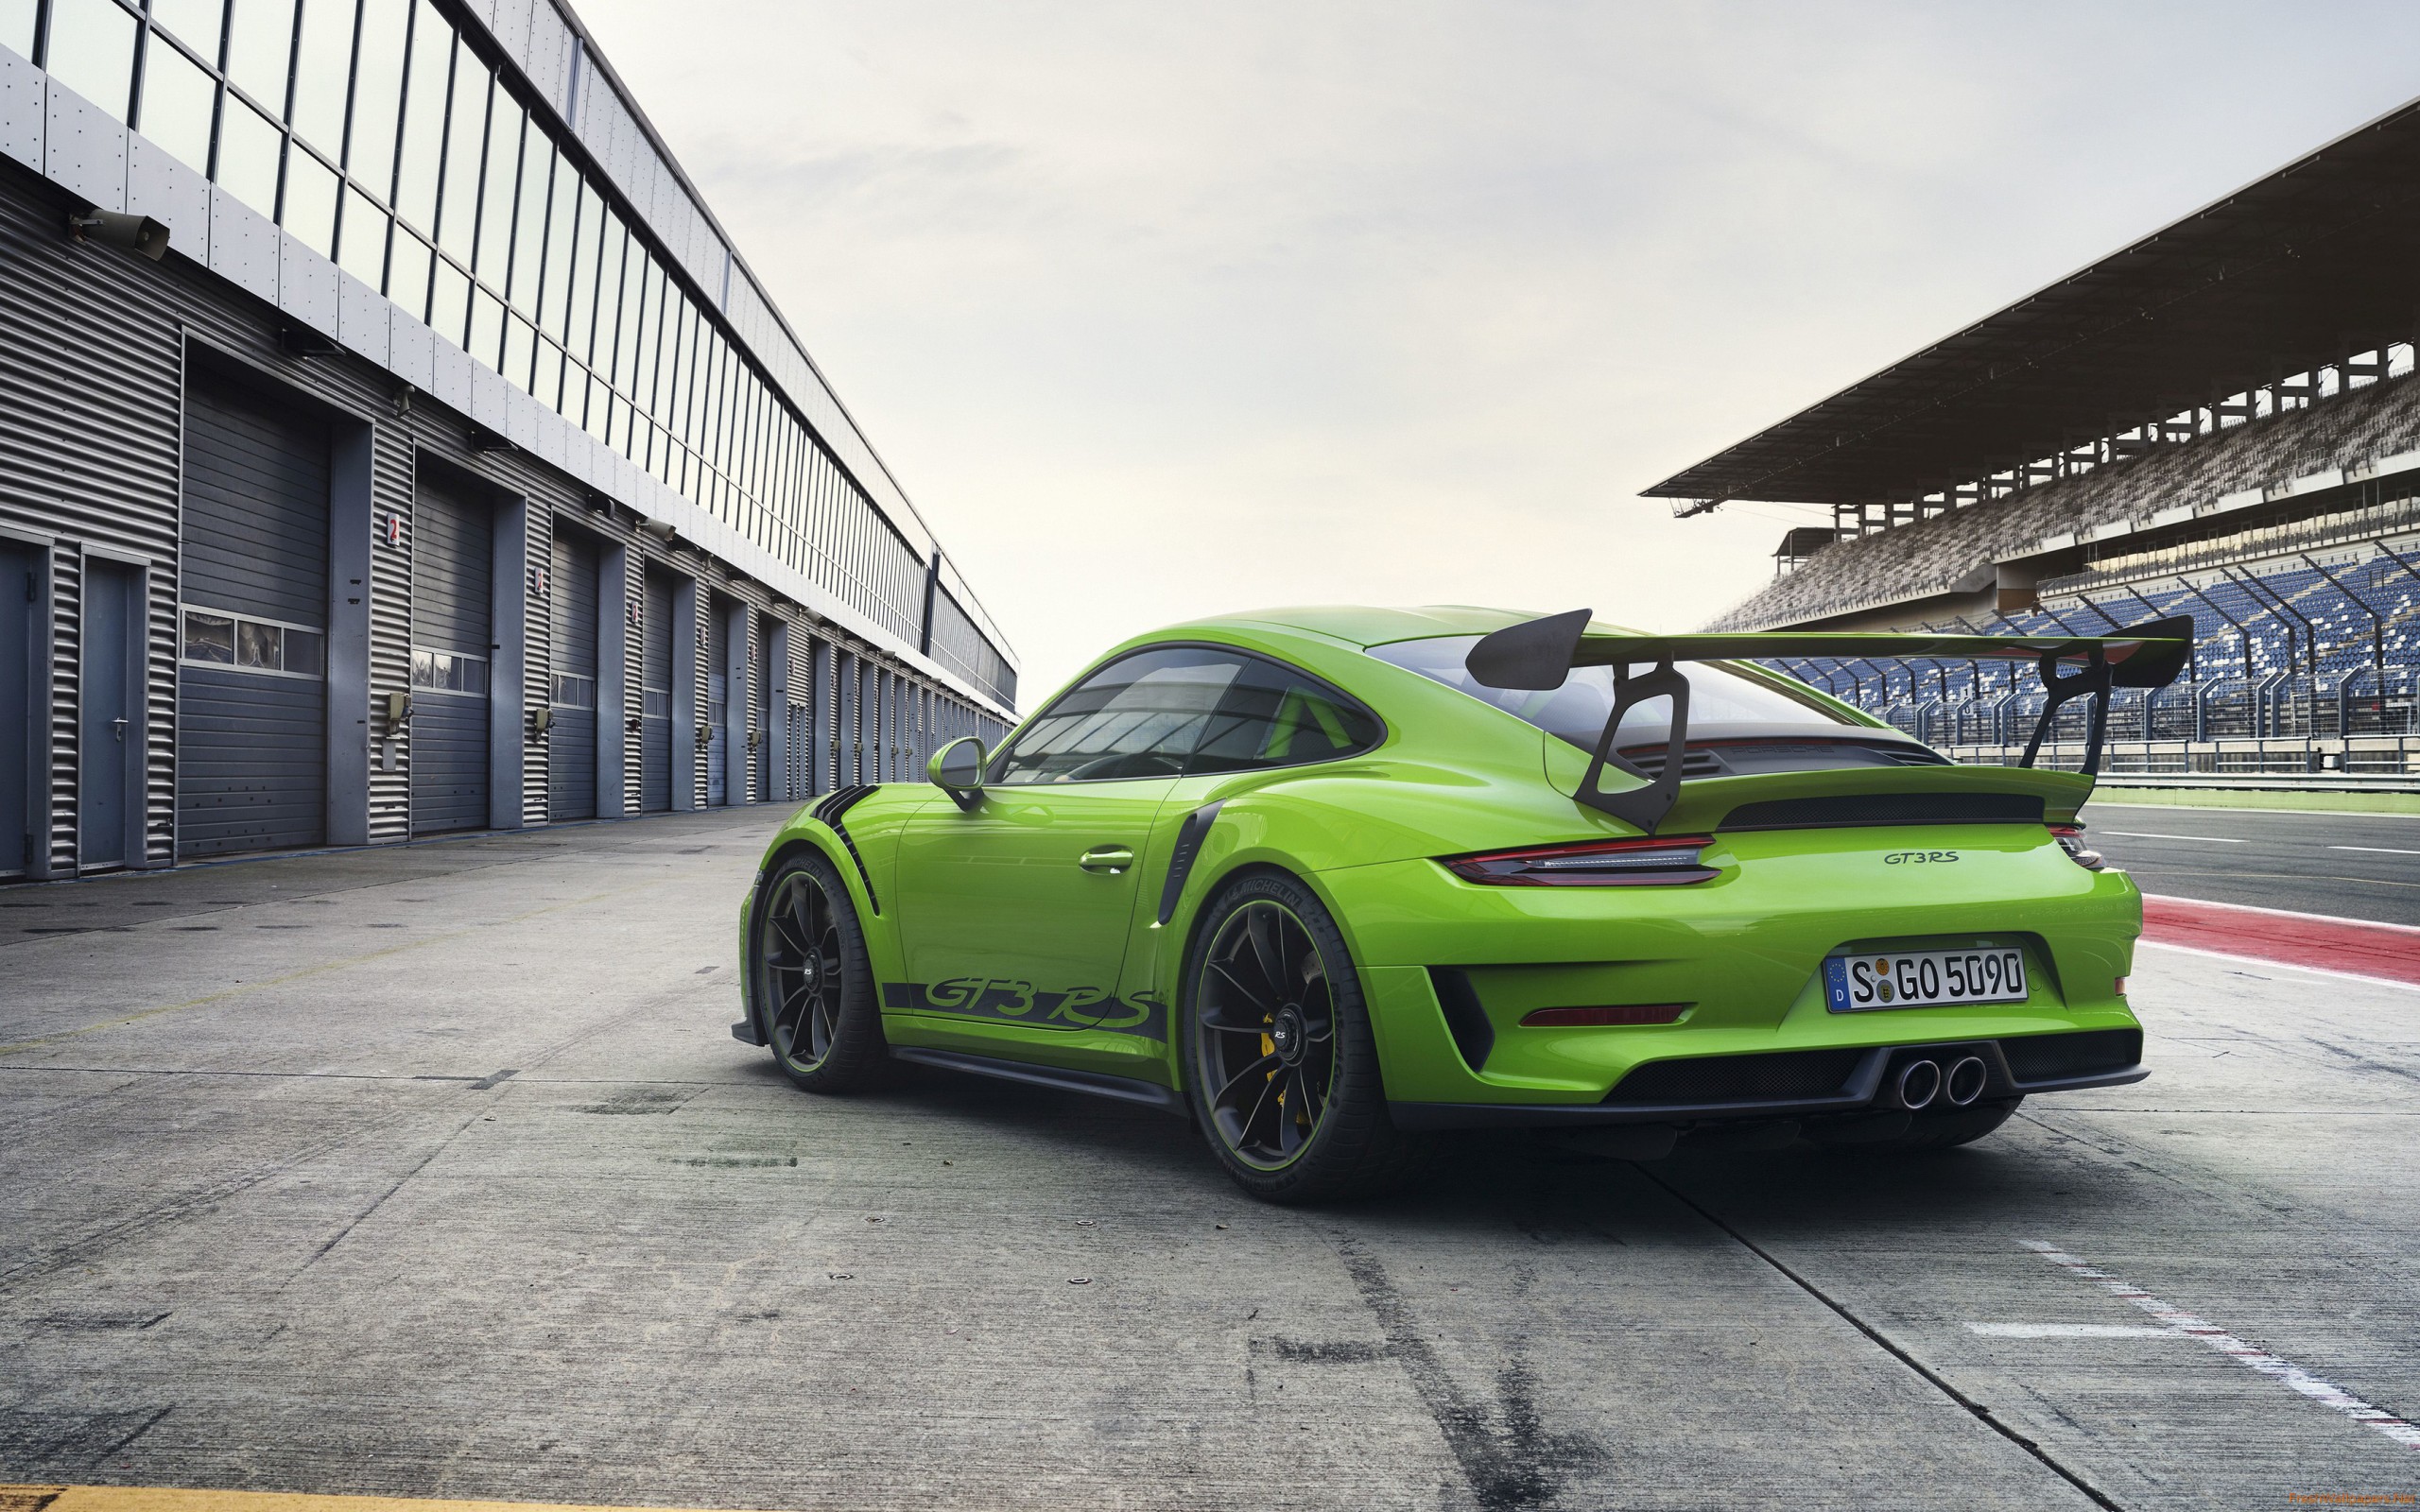 Porsche 911 Gt3 Rs 2018 Rear Wallpaper - Porsche Gt3 Rs 2018 , HD Wallpaper & Backgrounds